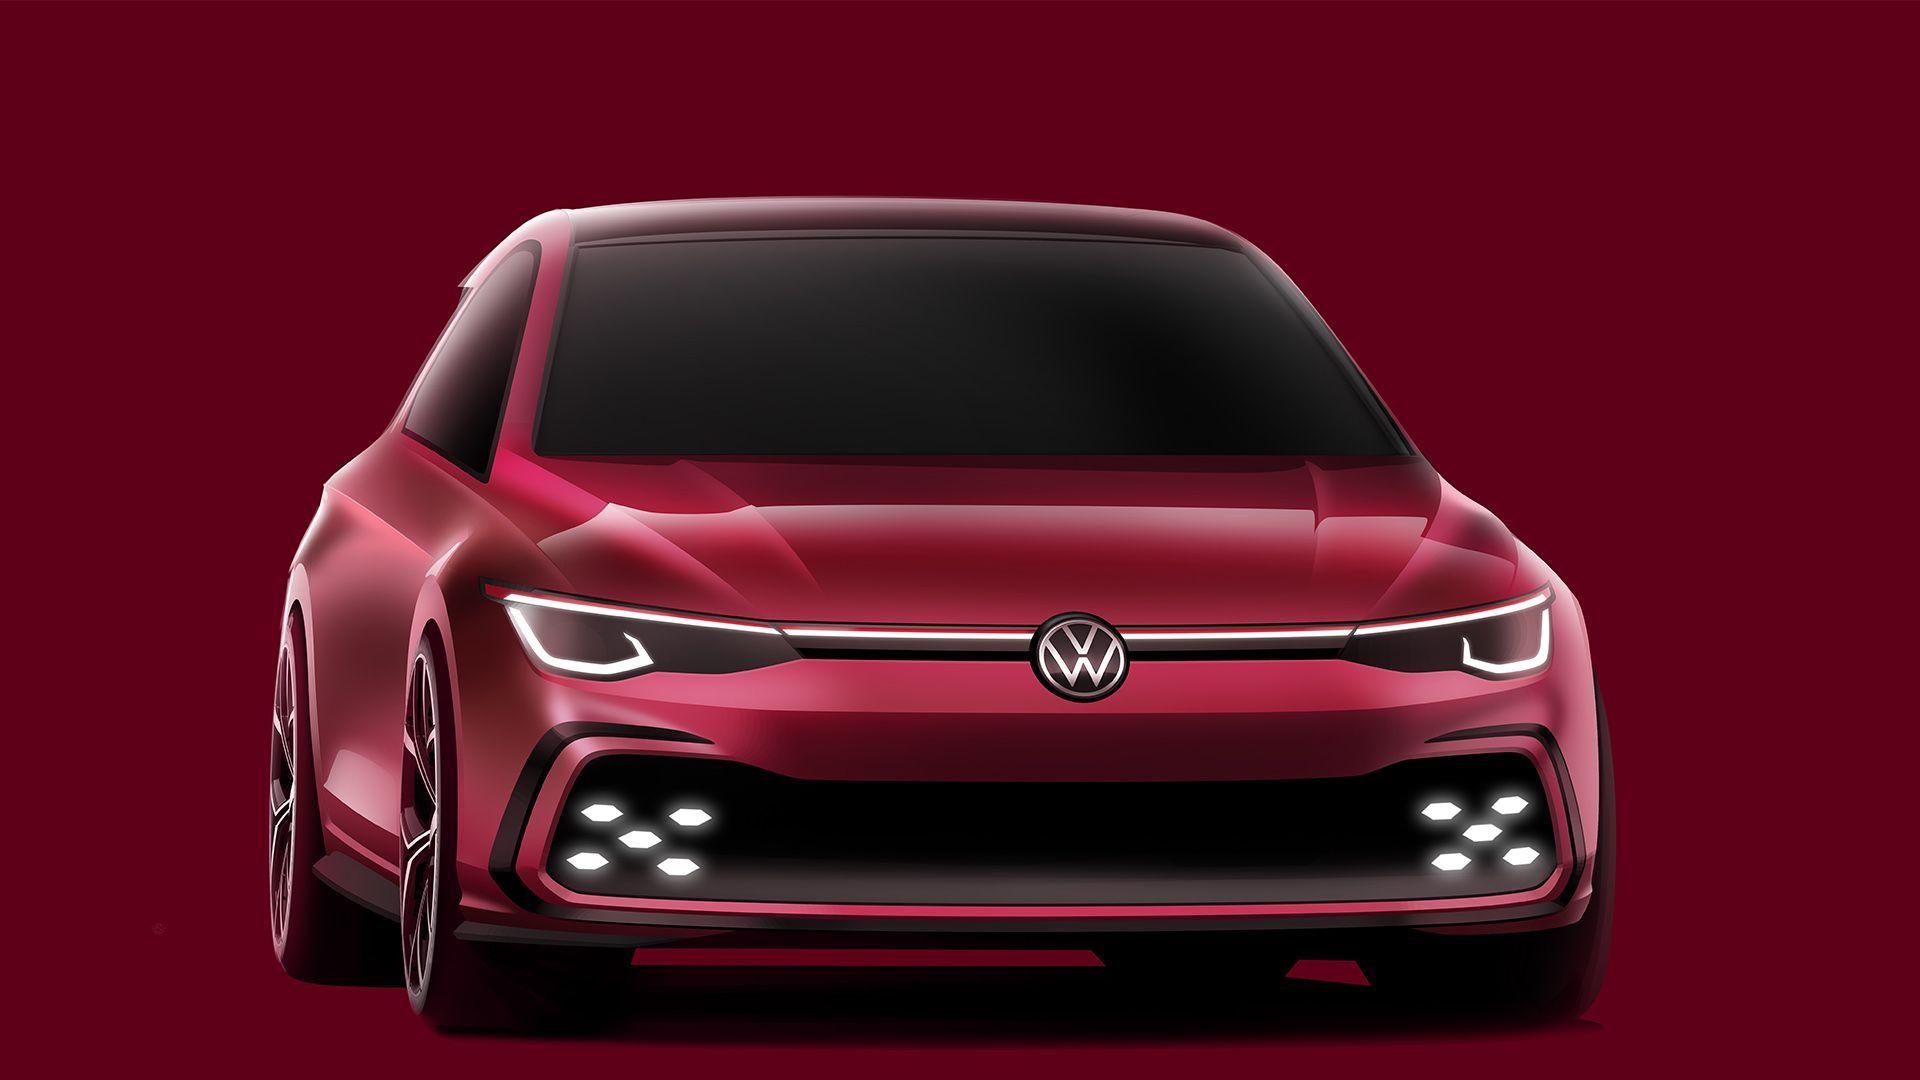 Volkswagen Golf GTI tvorba design skica